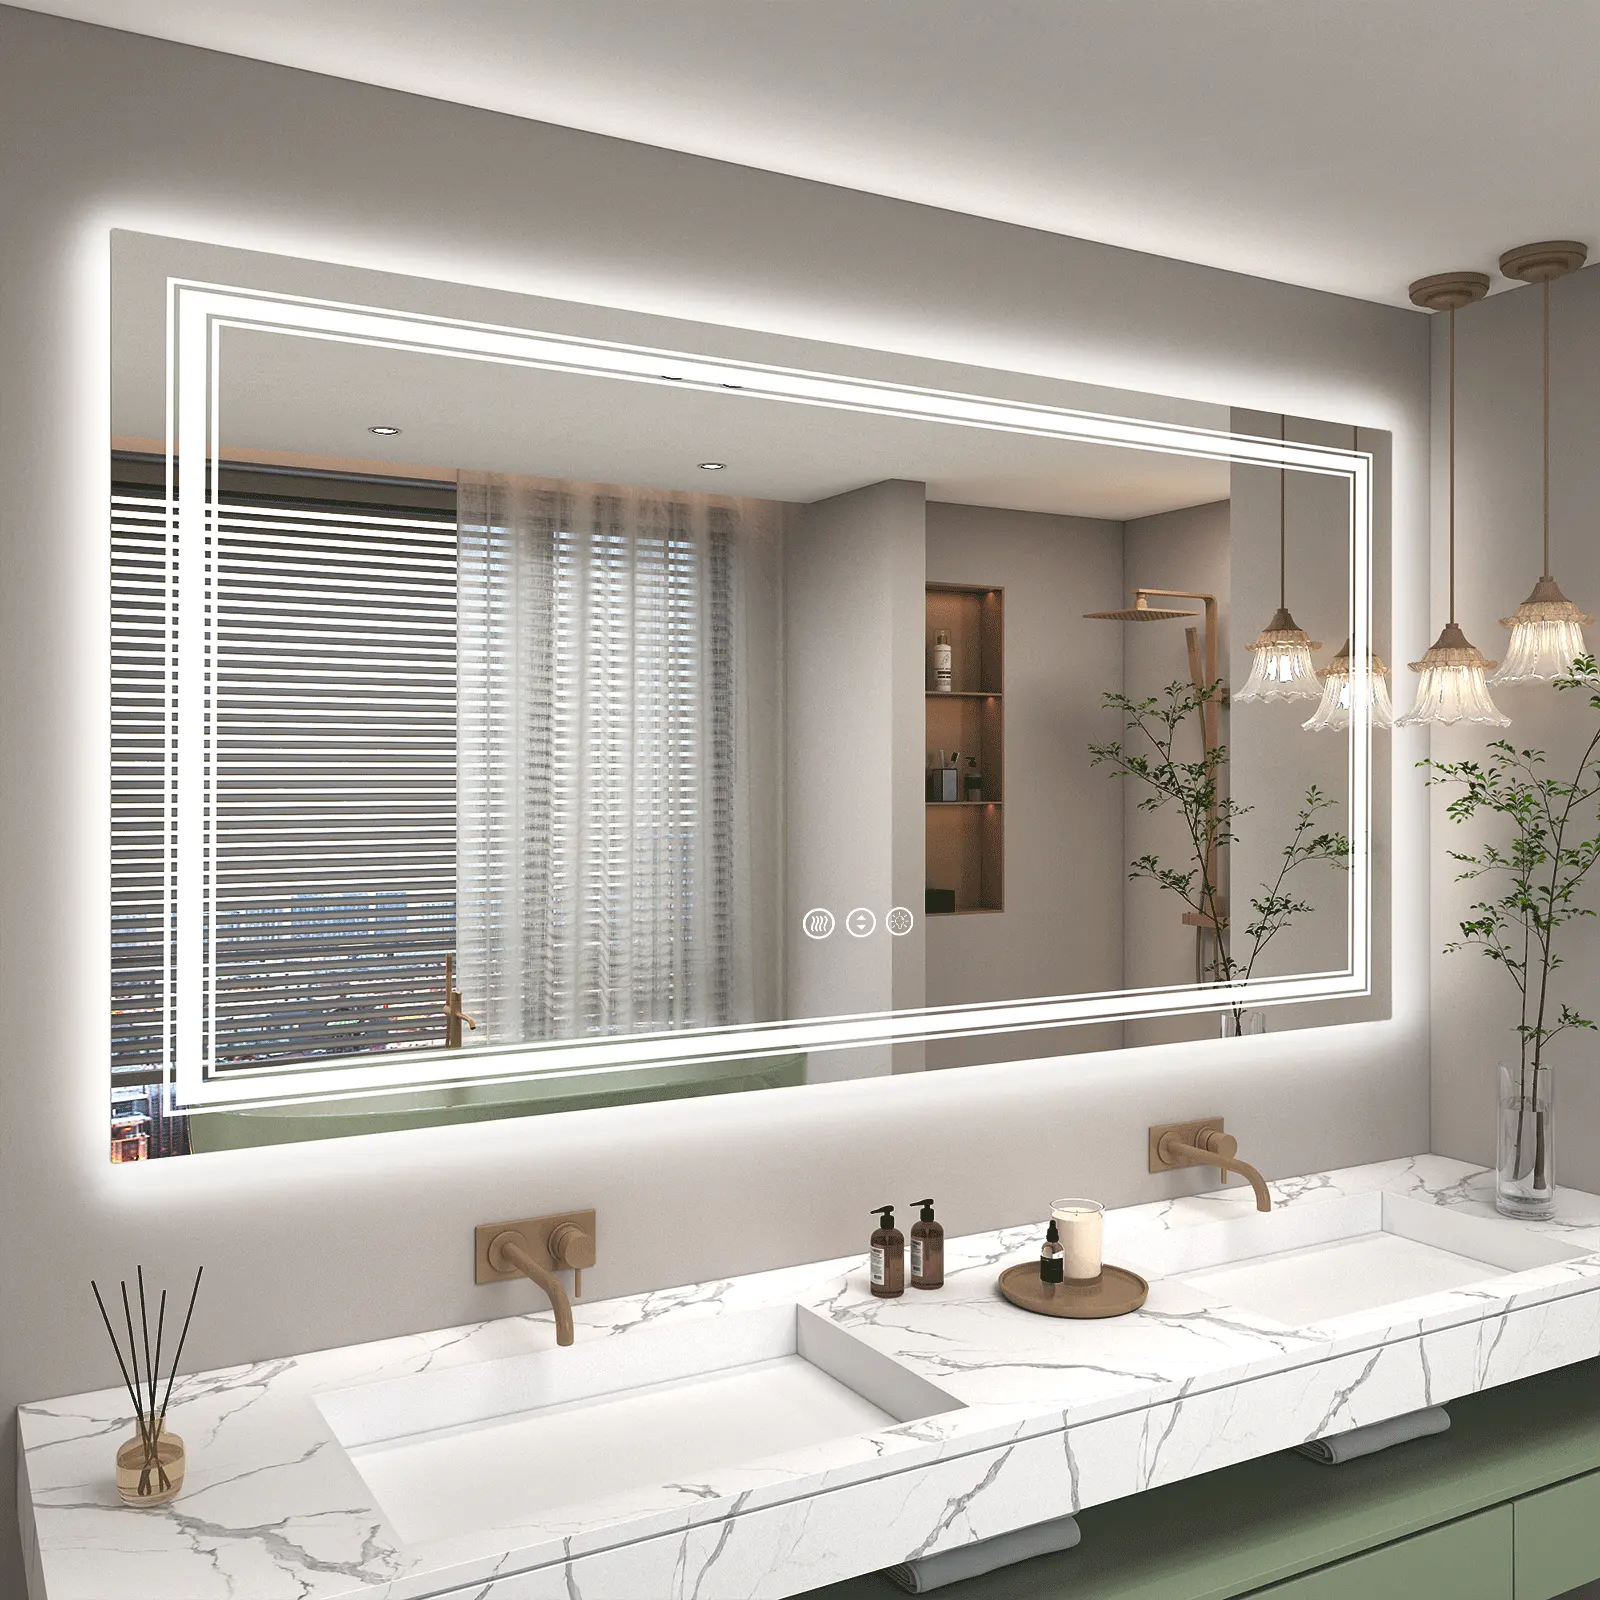 Neues Design Smart Led Spiegel Badezimmer Eitelkeit Led Licht gehärtet Badezimmers piegel